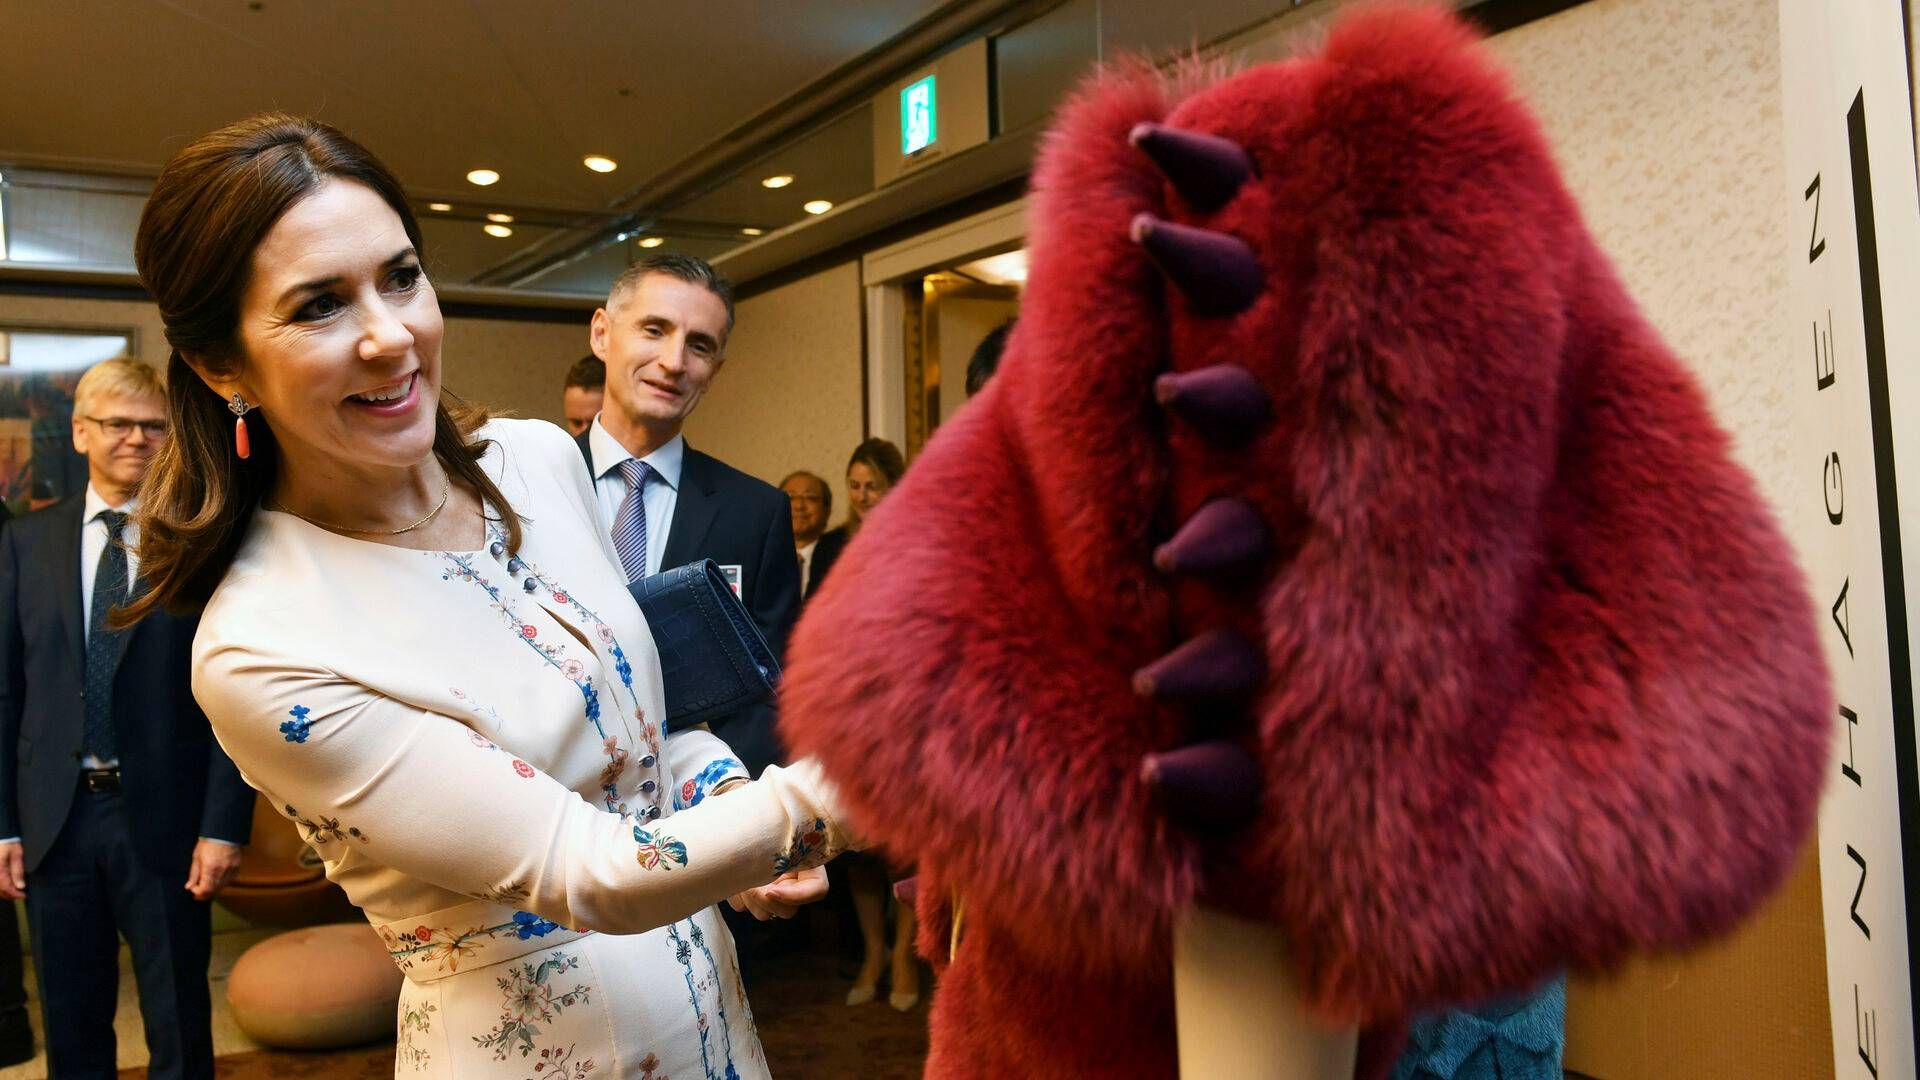 Kopenhagen Fur har både haft god opbakning fra mange politikere og fra Kongehuset, her repræsenteret af kronprinsesse Mary. Det må skyldes en "effektiv lobbyindsats", lyder det fra forsker. | Foto: Yoko Miwa/AP/Ritzau Scanpix